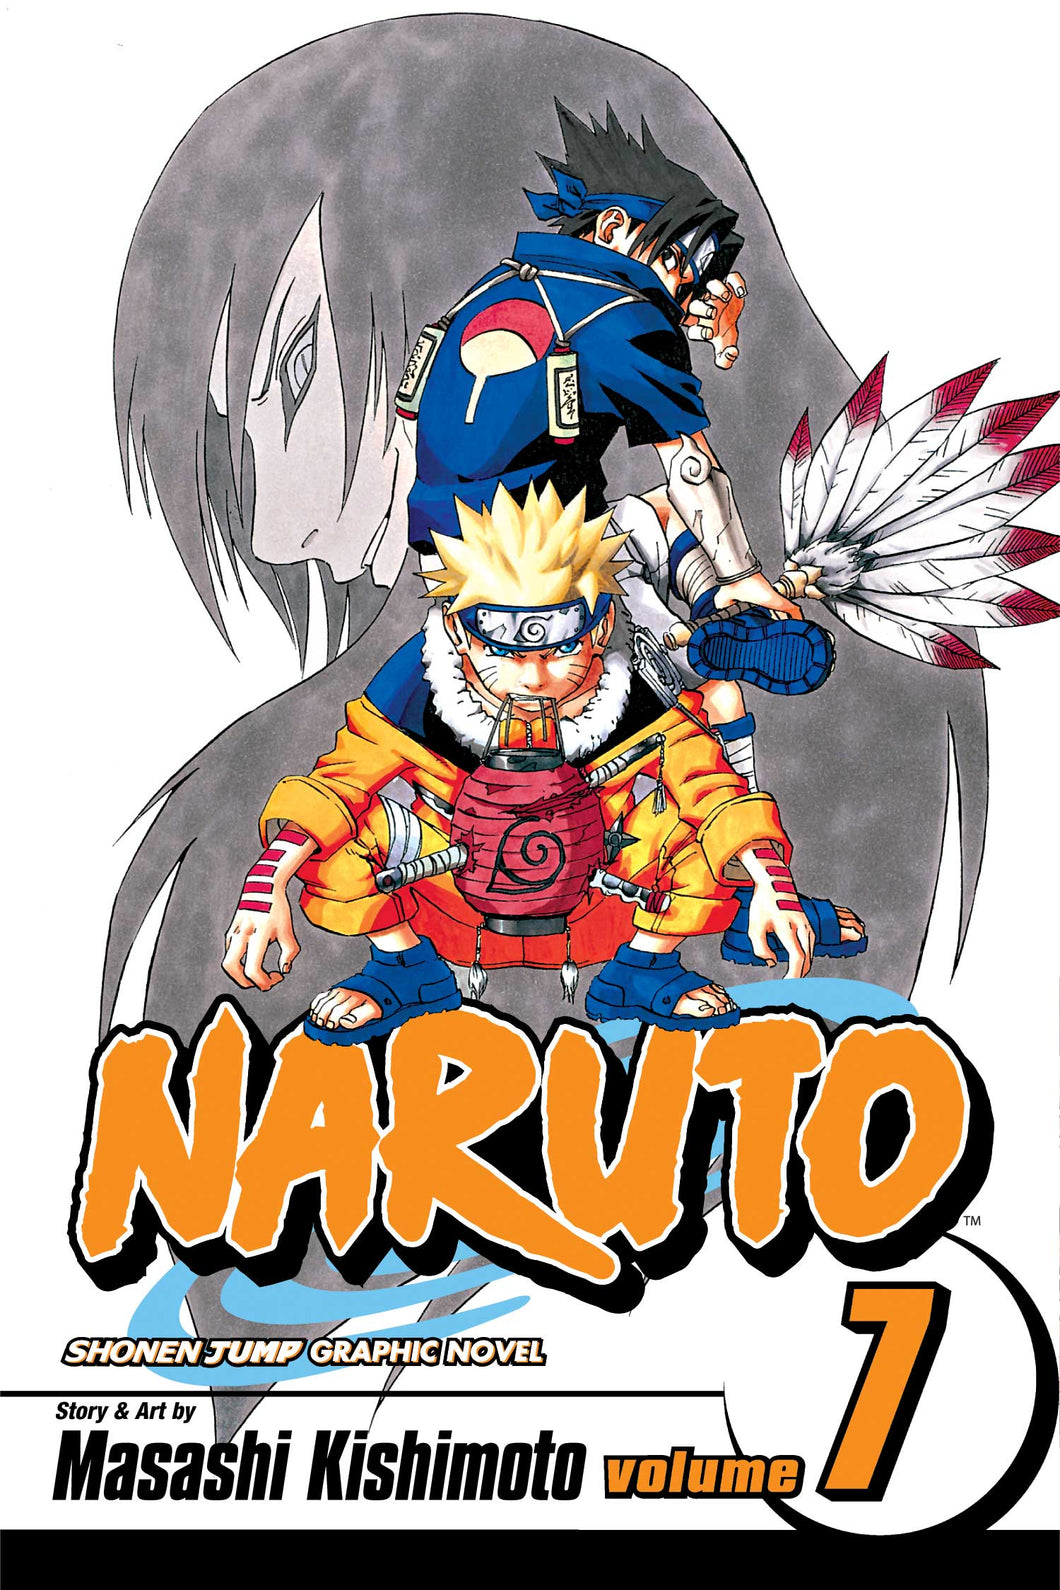 Naruto Volume 7